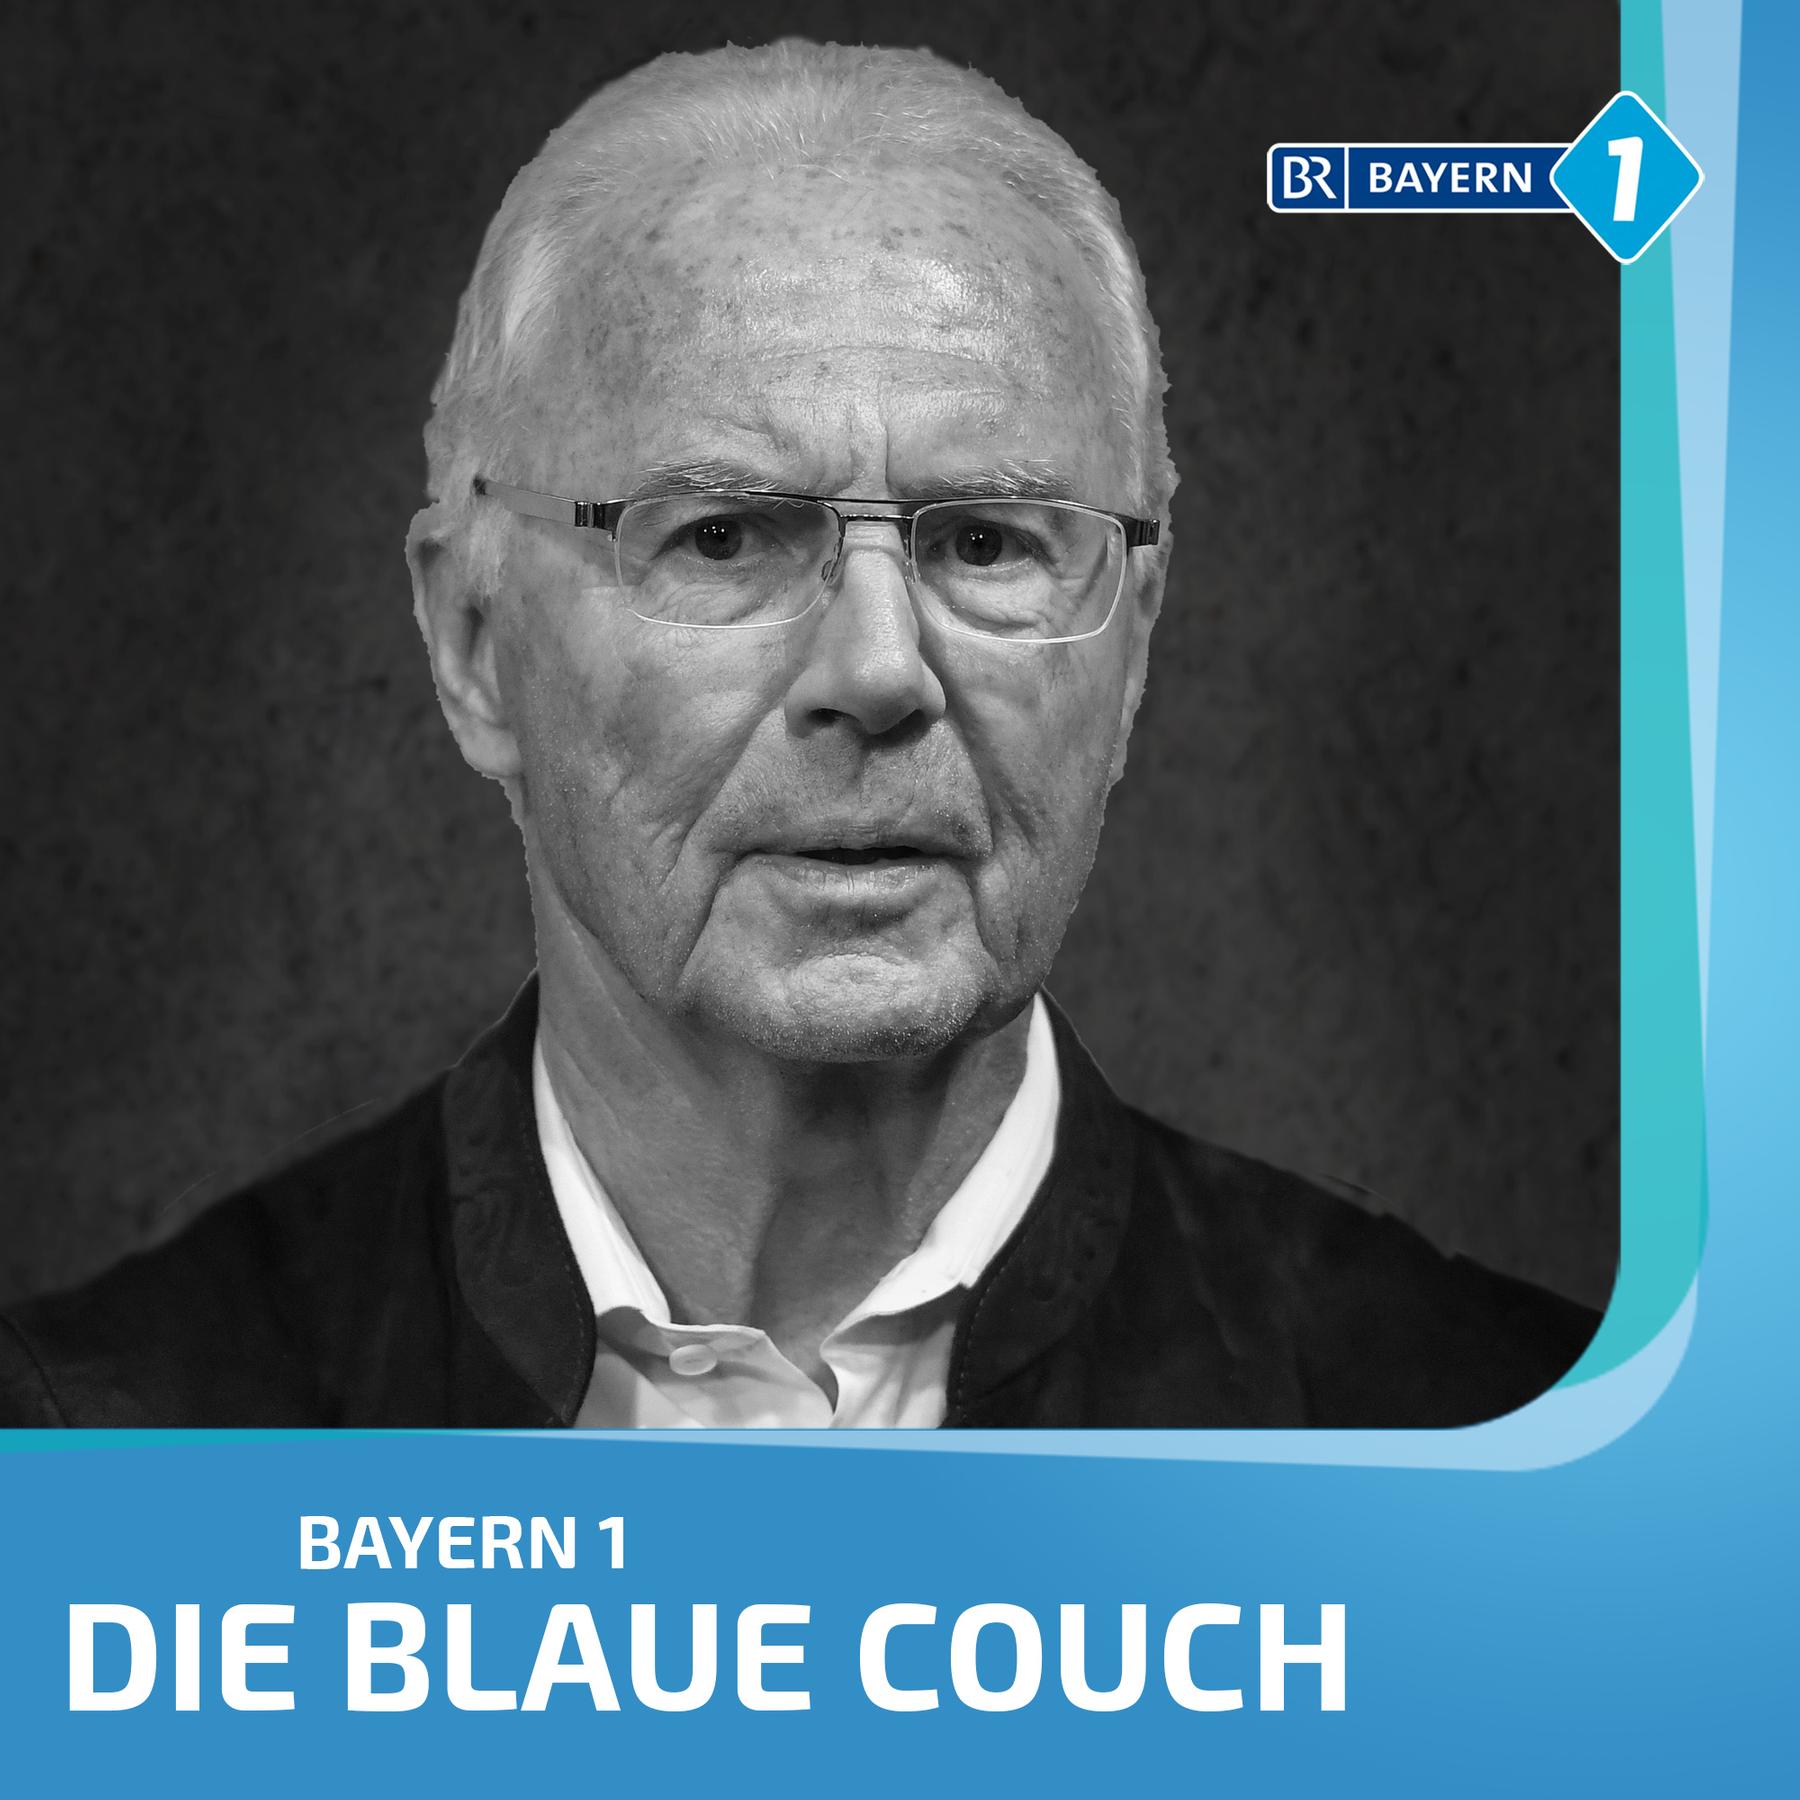 Zum Tod von Franz Beckenbauer, seine Weggefährten im Gespräch: 